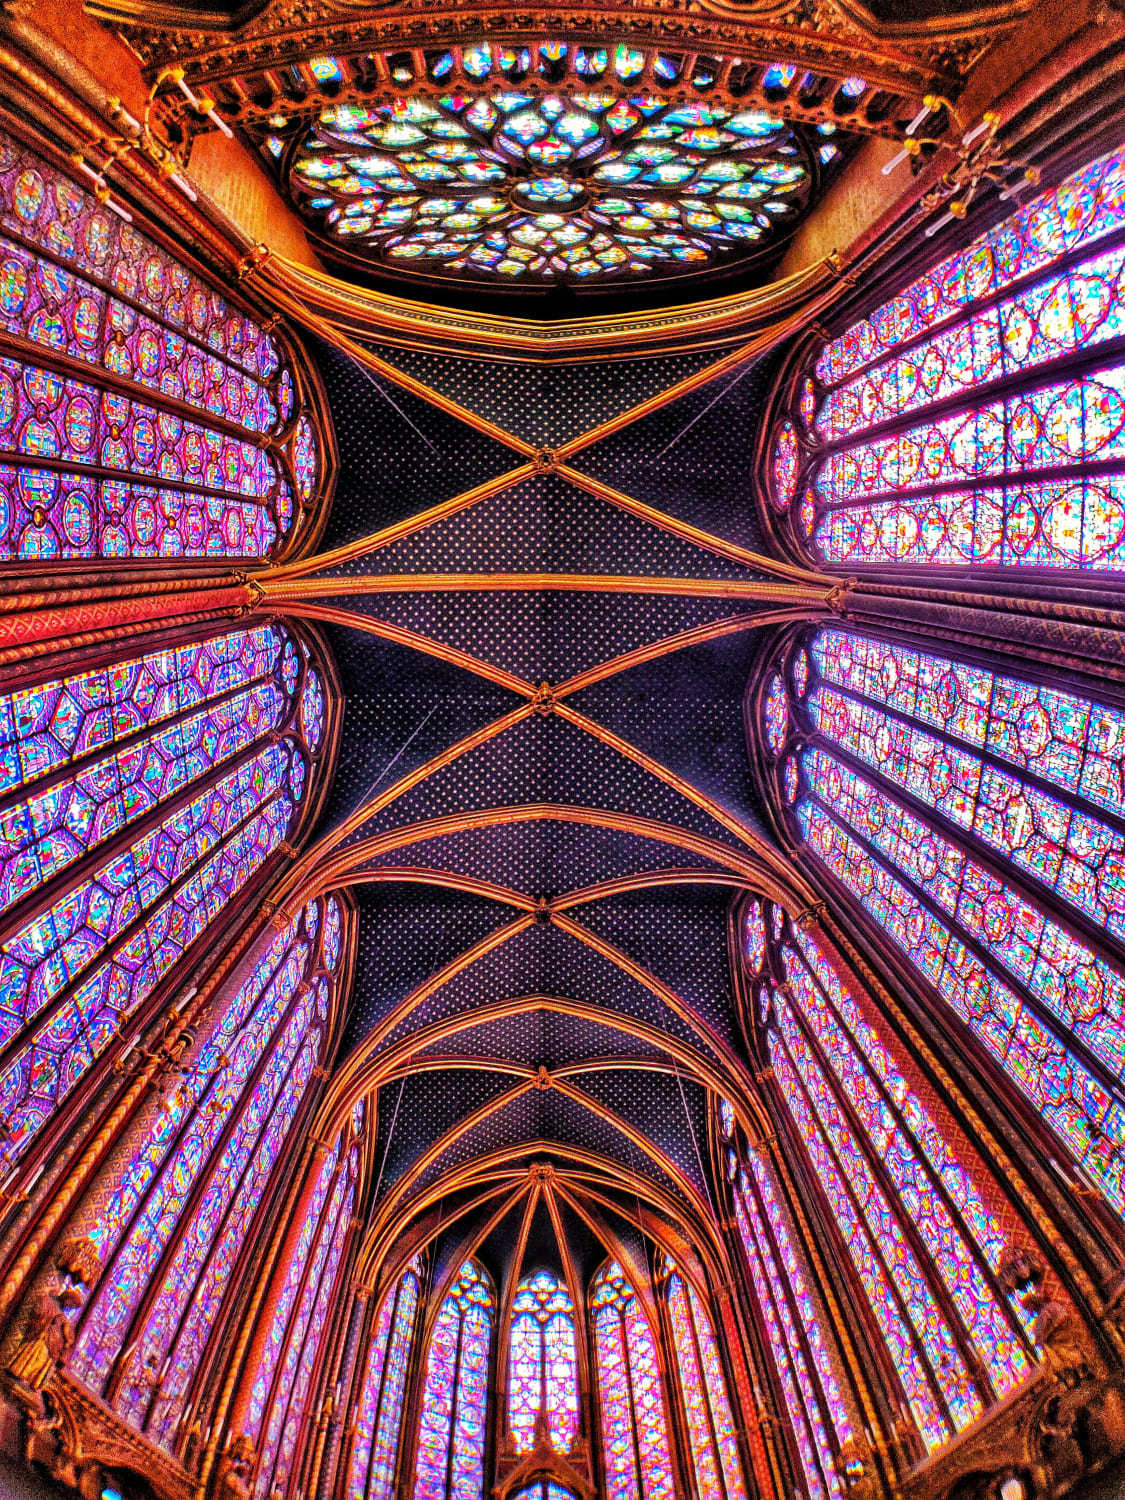 Sainte-Chapelle, Paris.